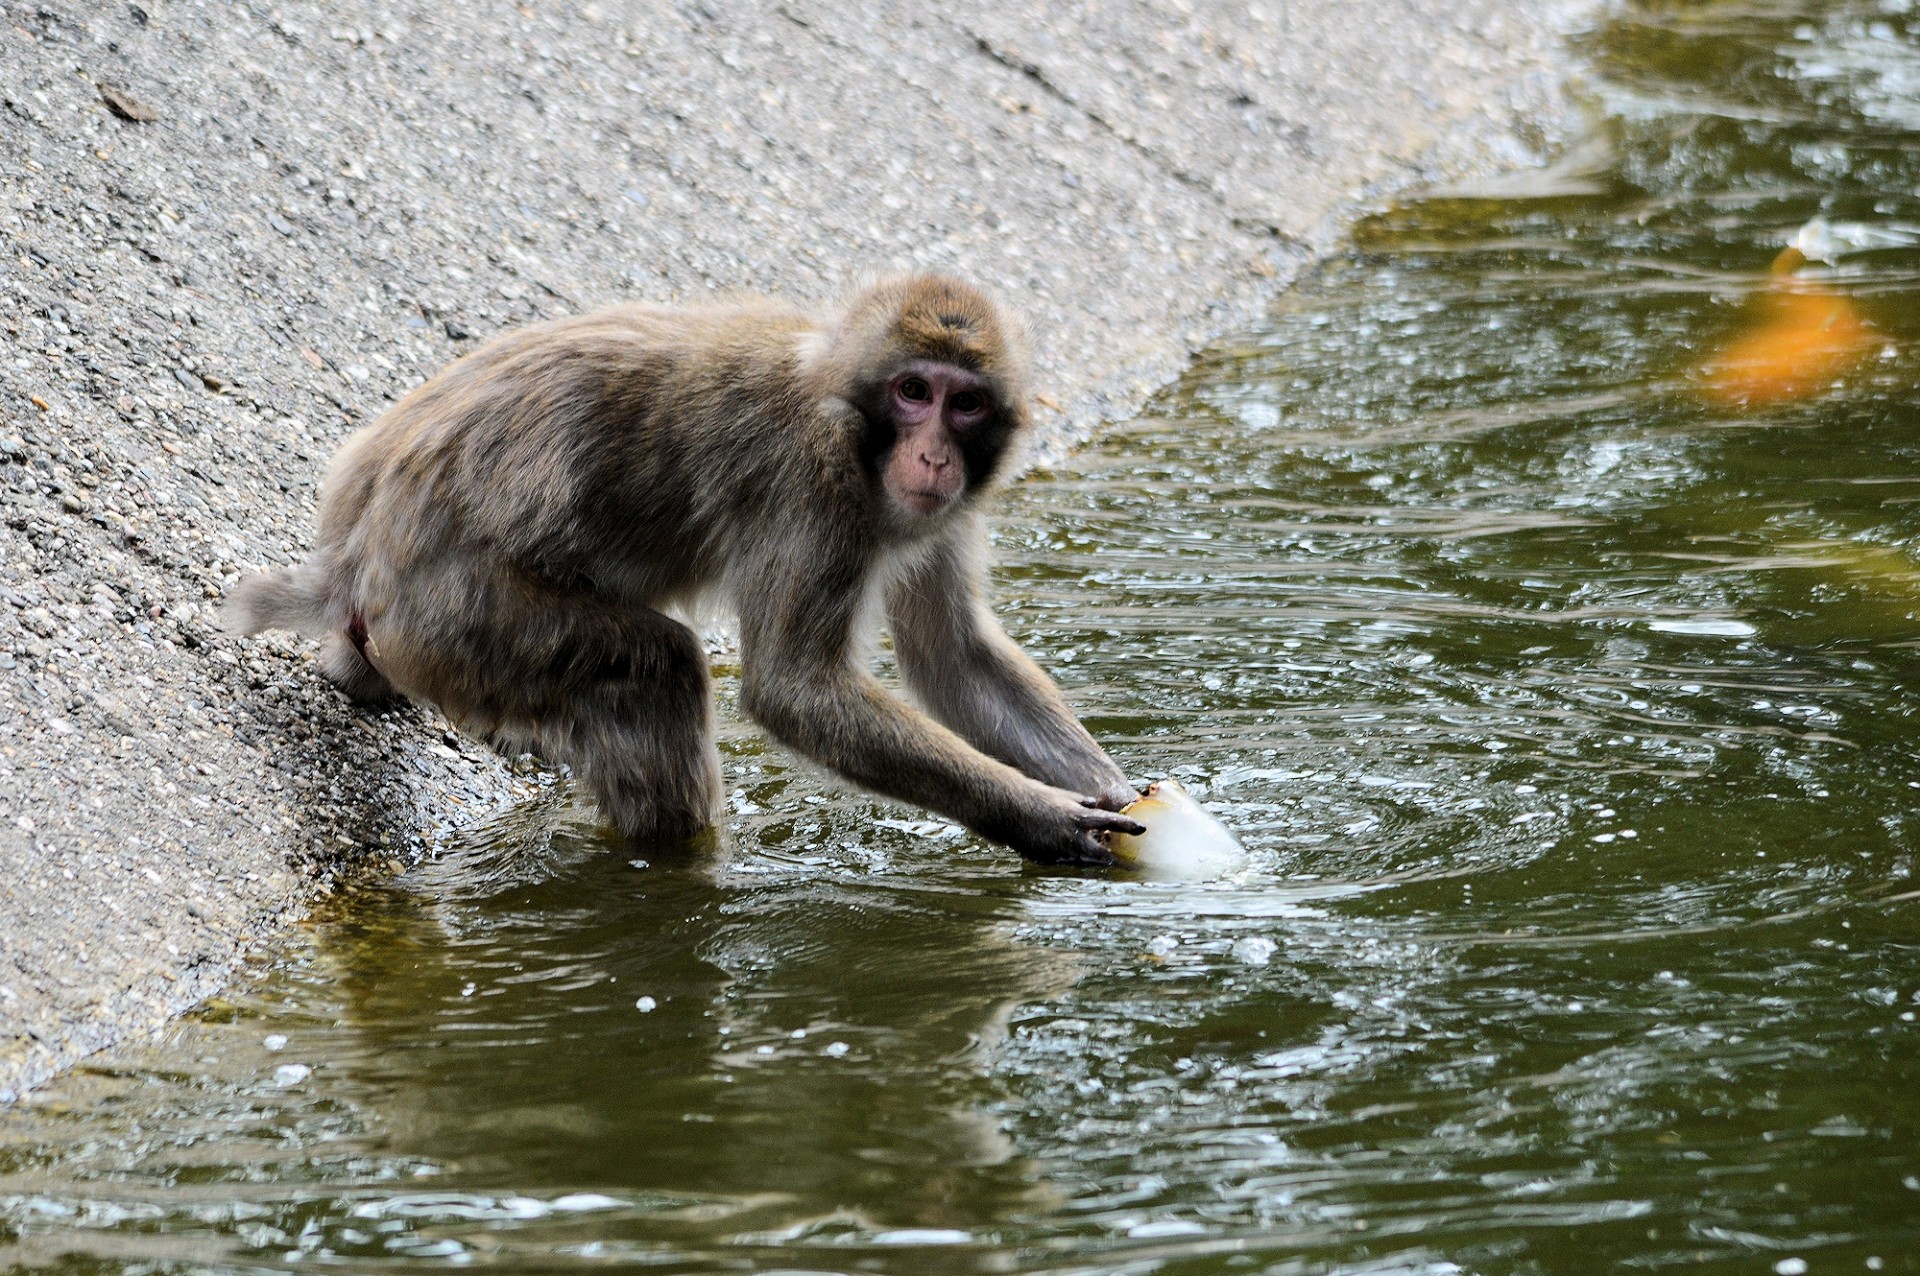 monkey ape series free photo